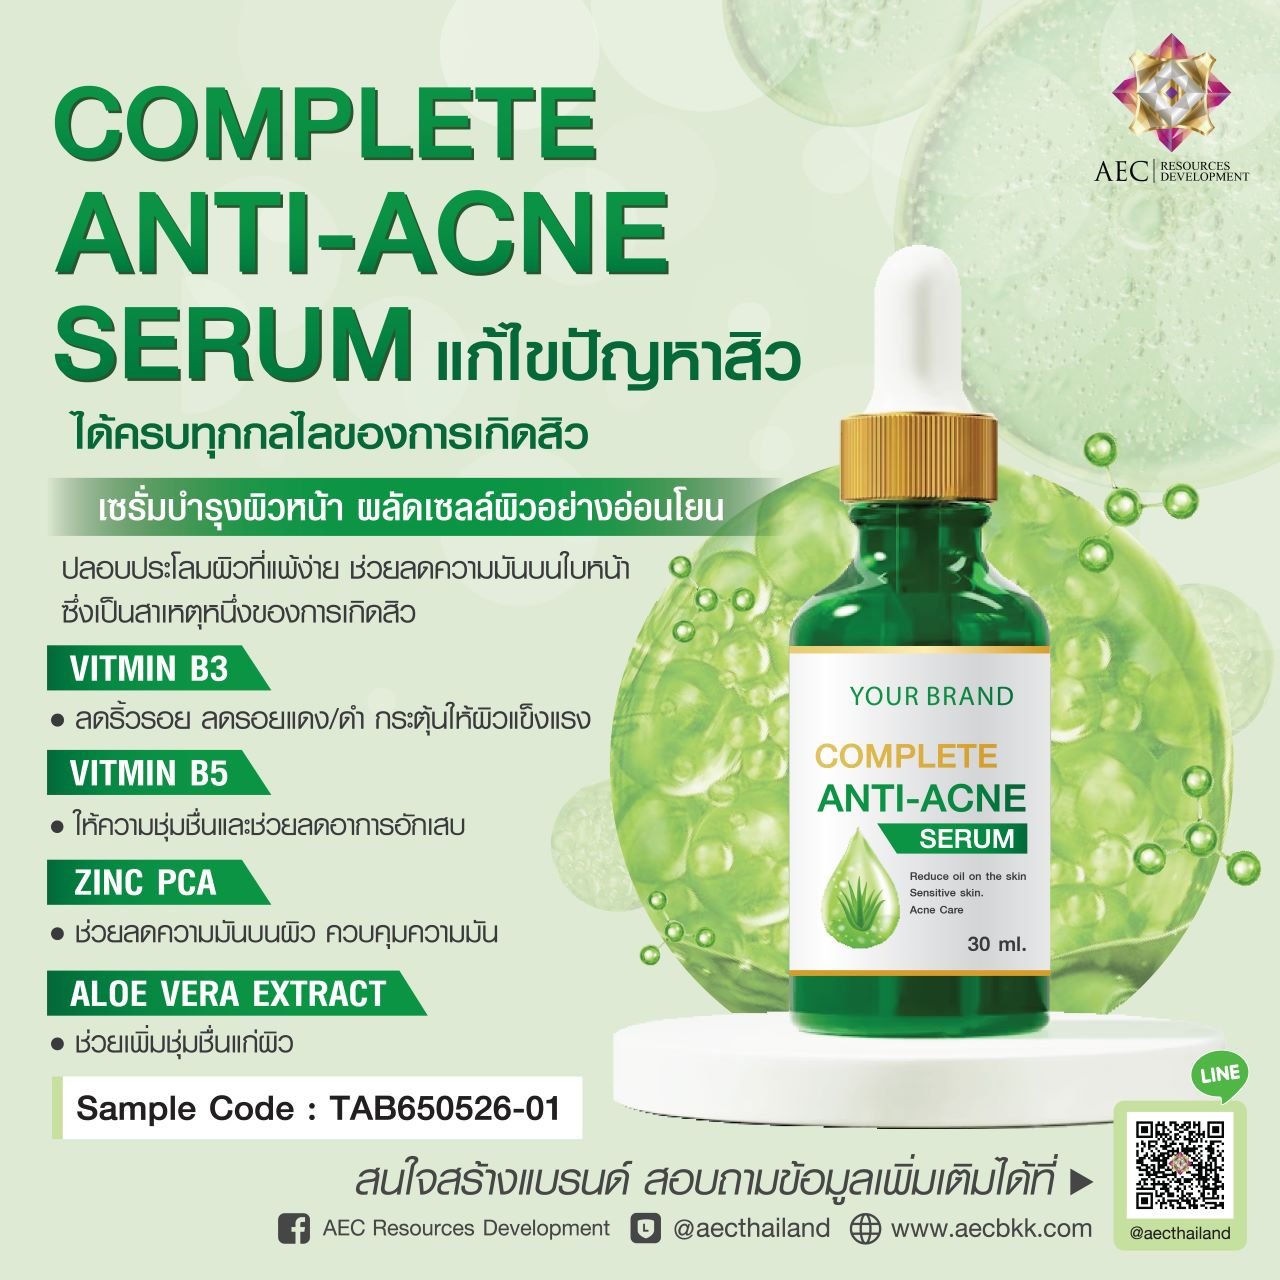 Complete Anti-Acne Serum